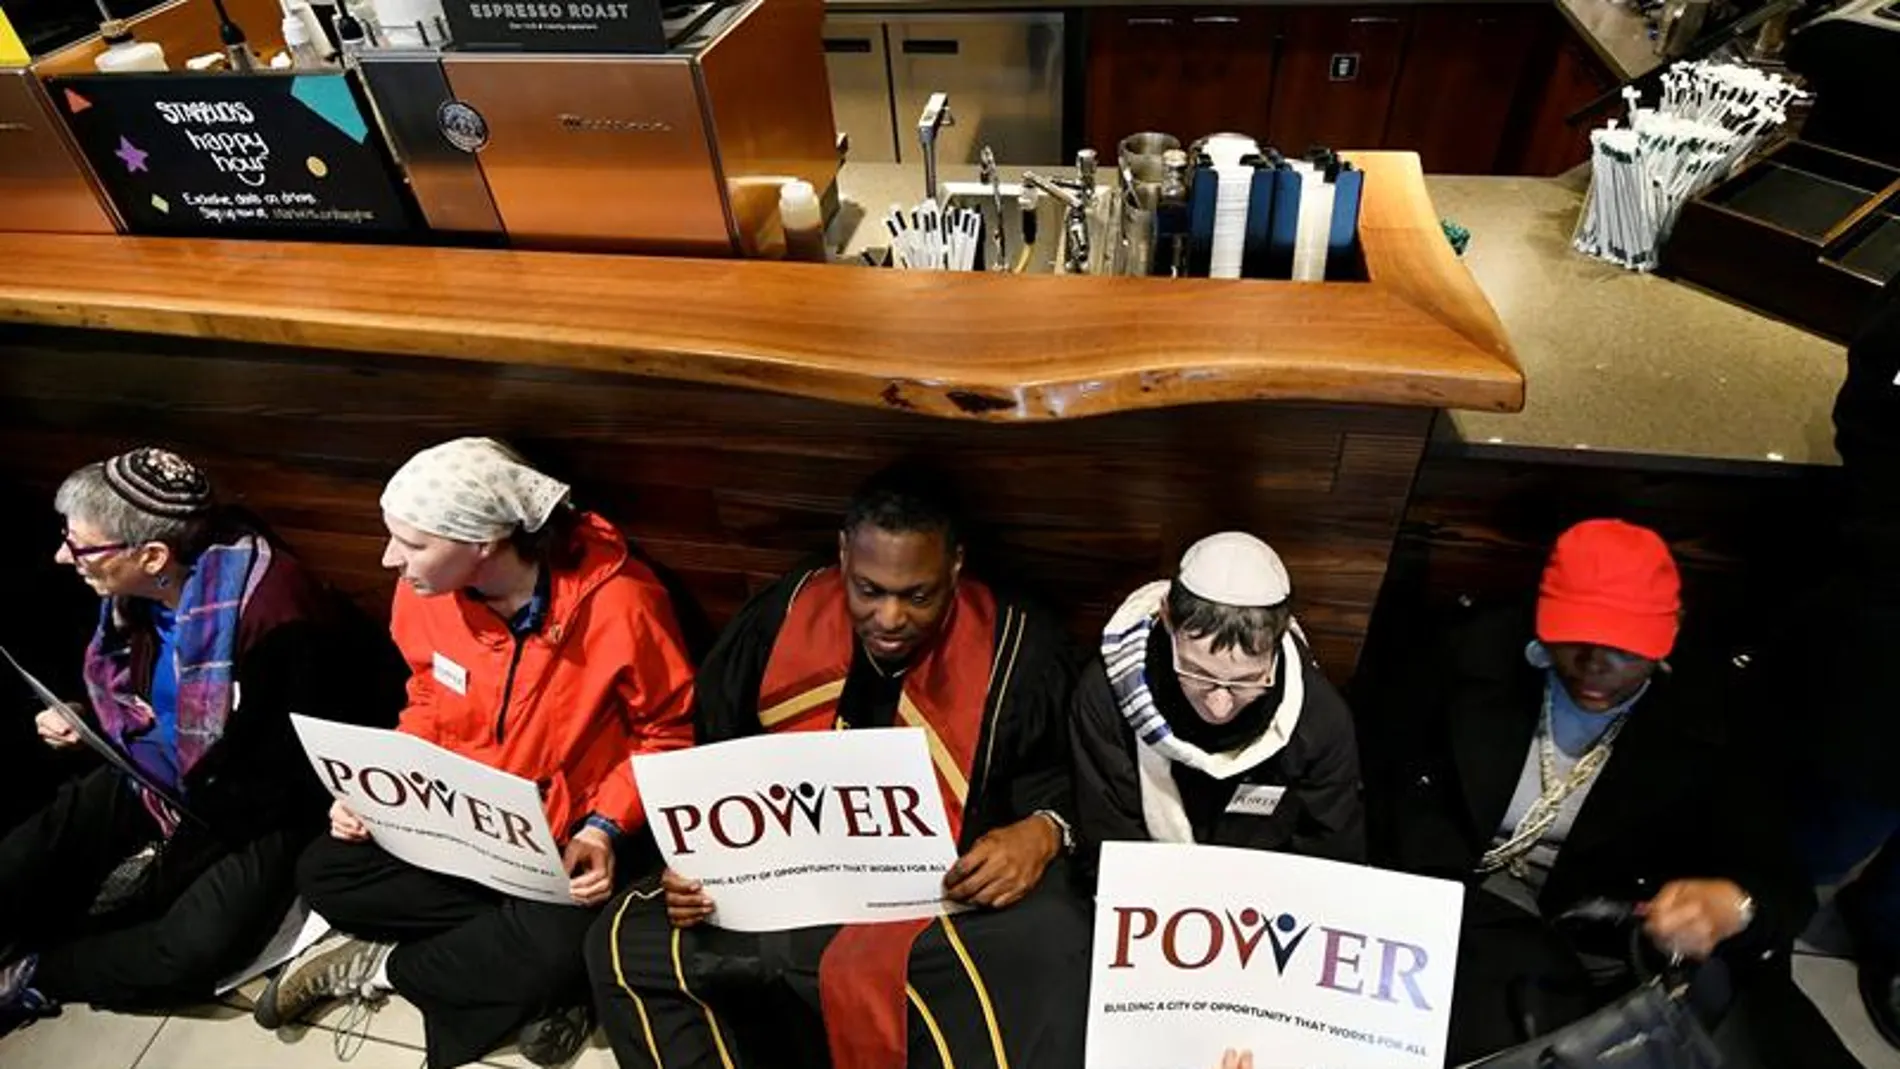 Miembros del movimiento "POWER Interfaith" protestan en una cafetería Starbucks en el centro de Filadelfia